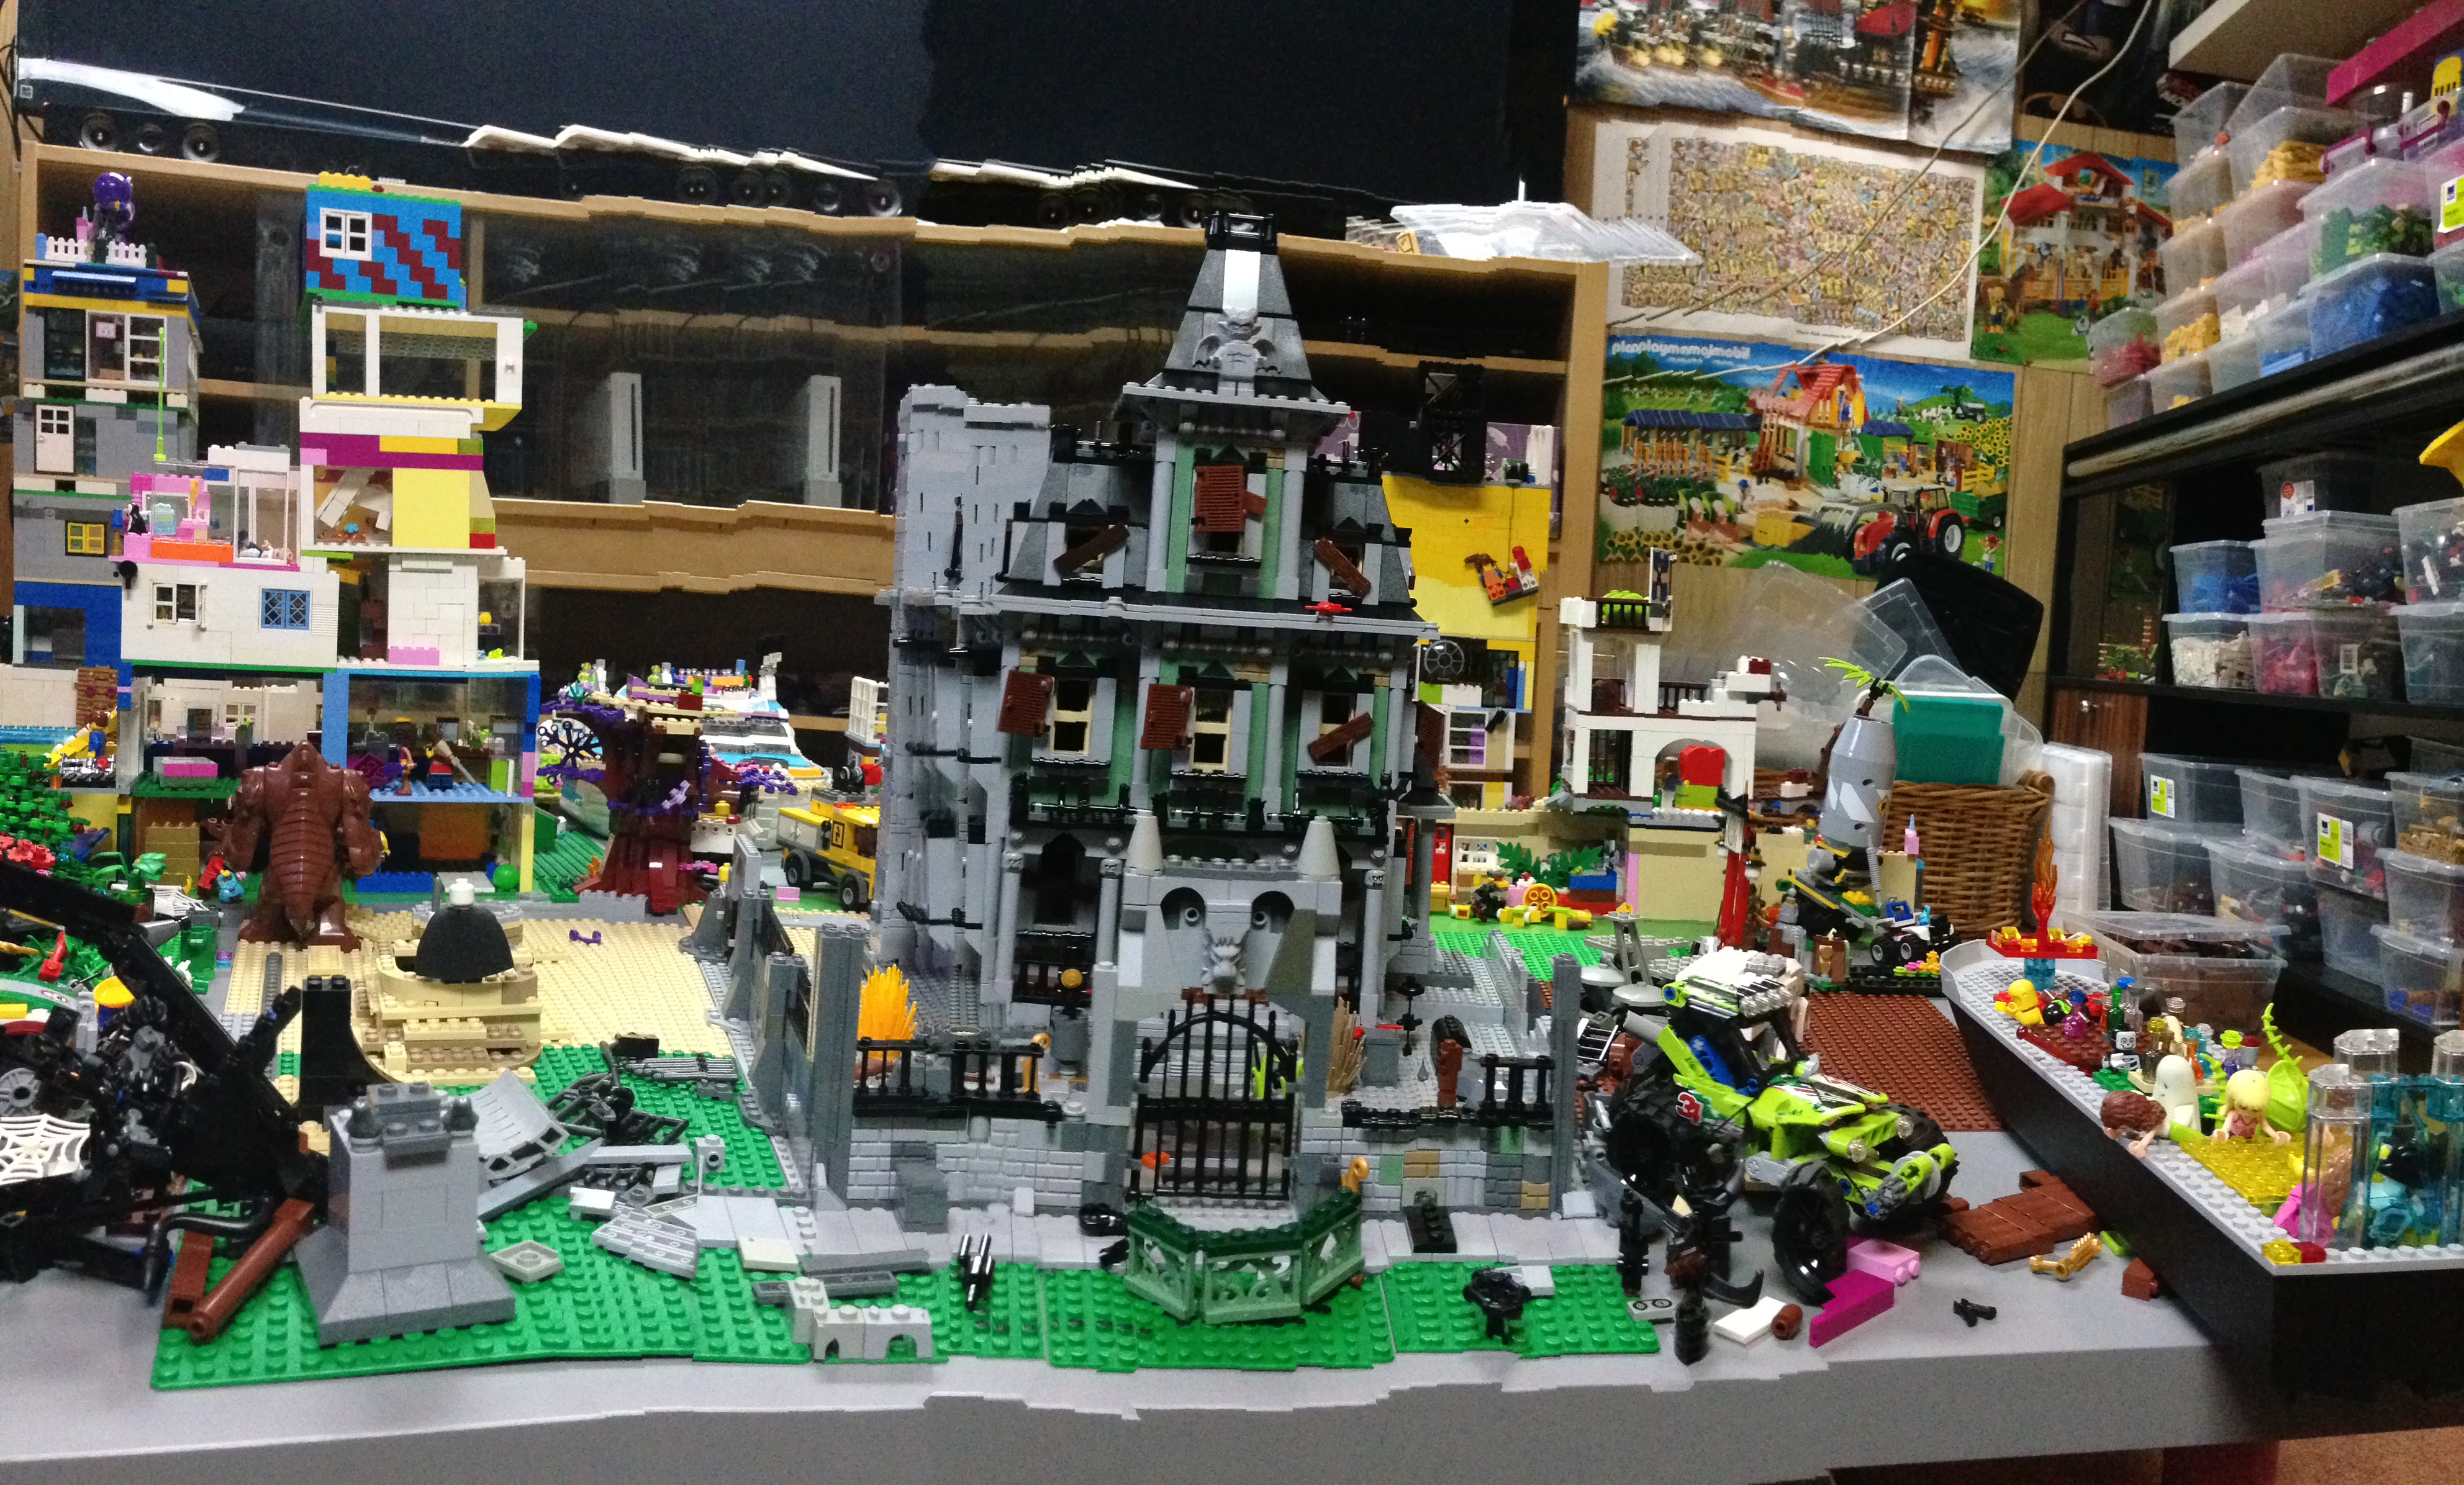 panorama of Haunted House Lego moc